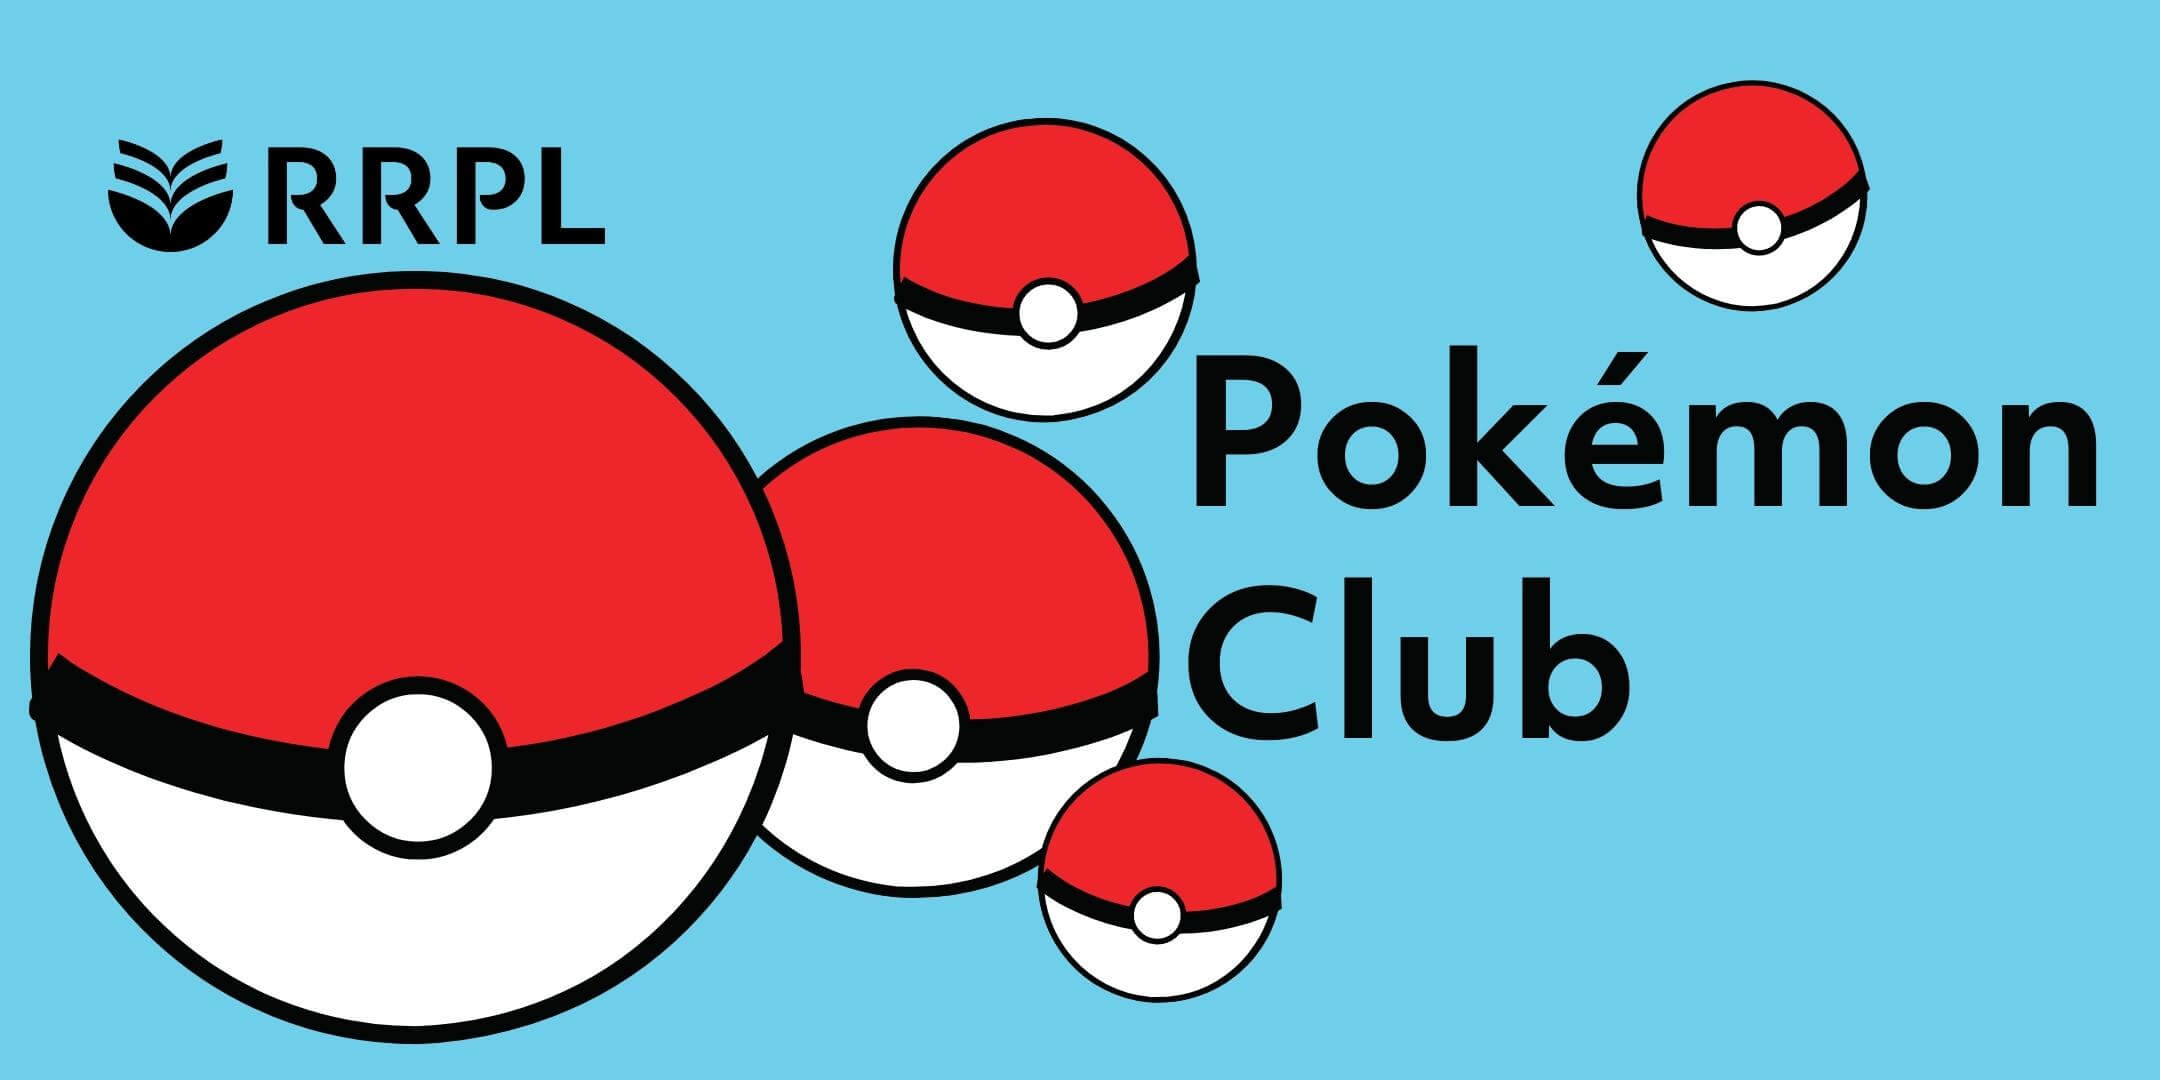 Pokémon Club - Round The Rock